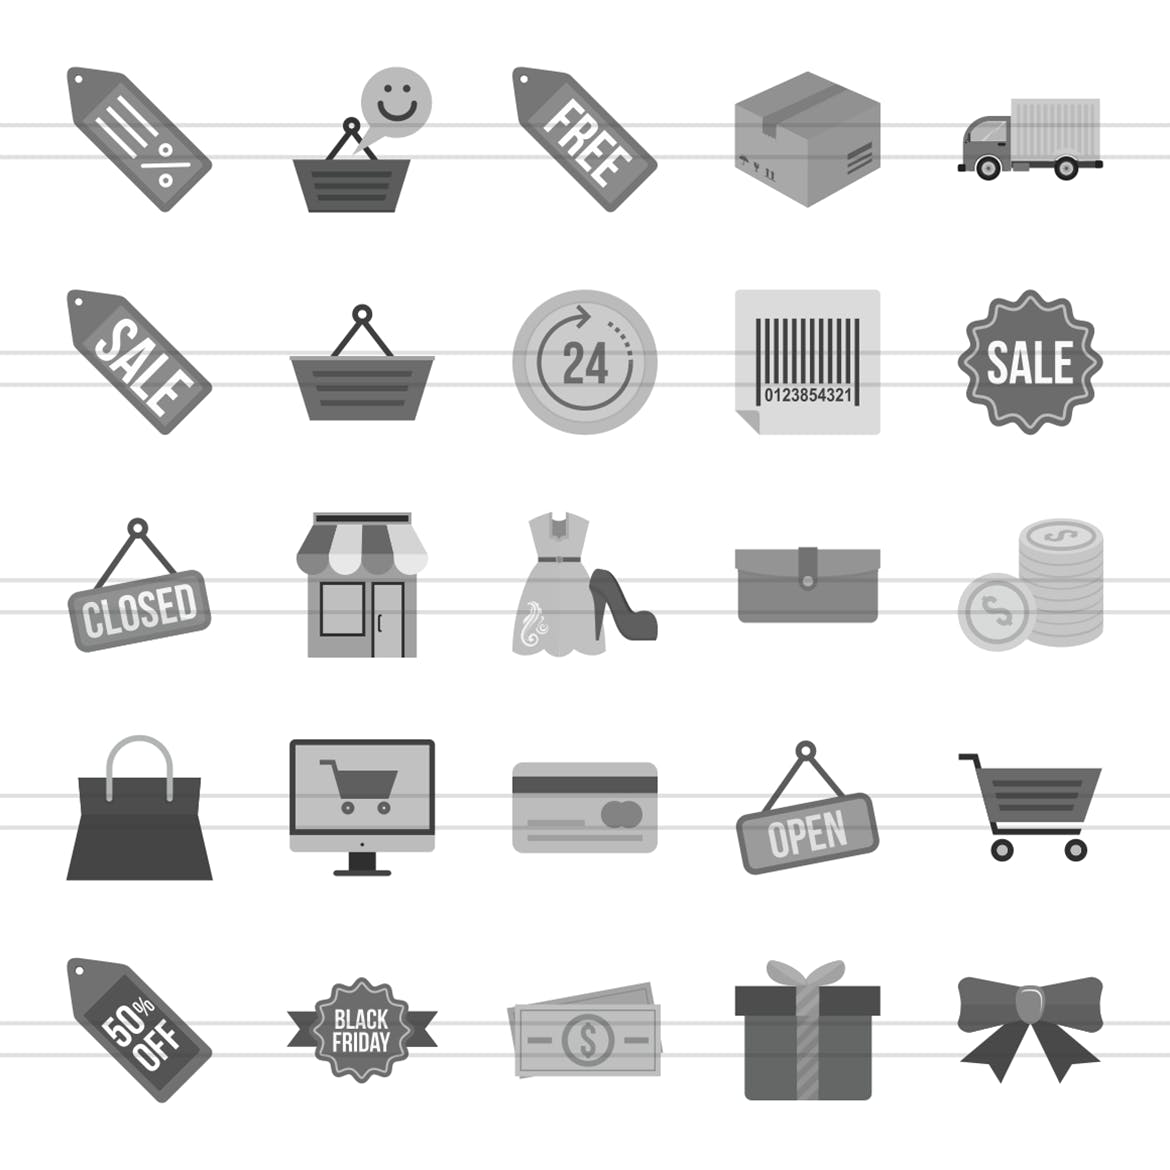 25个黑色星期五购物节主题灰阶图标 25 Black Friday Greyscale Icons插图(1)